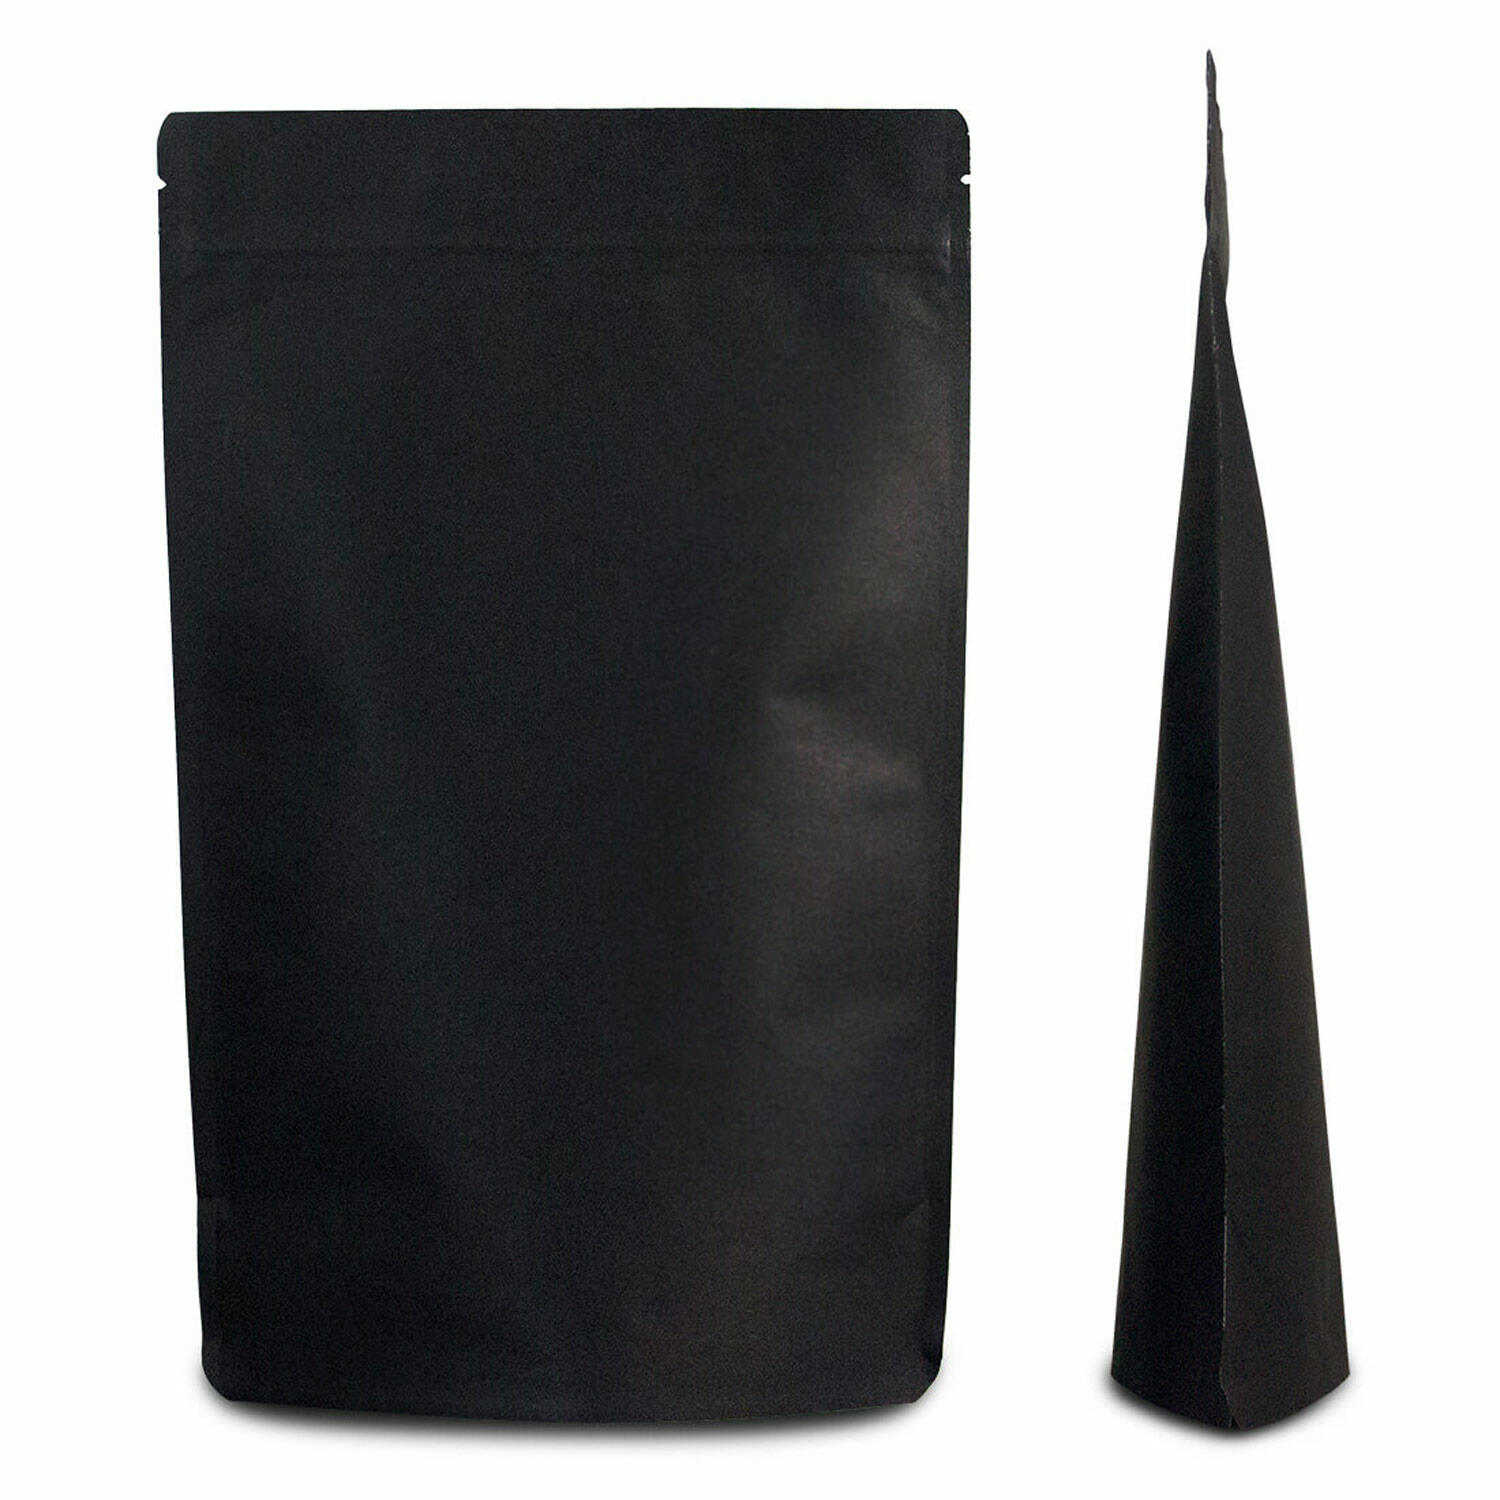 Standbodenbeutel Kraftpapier schwarz, 180x290x90mm, 1000ml, 500 Stk.